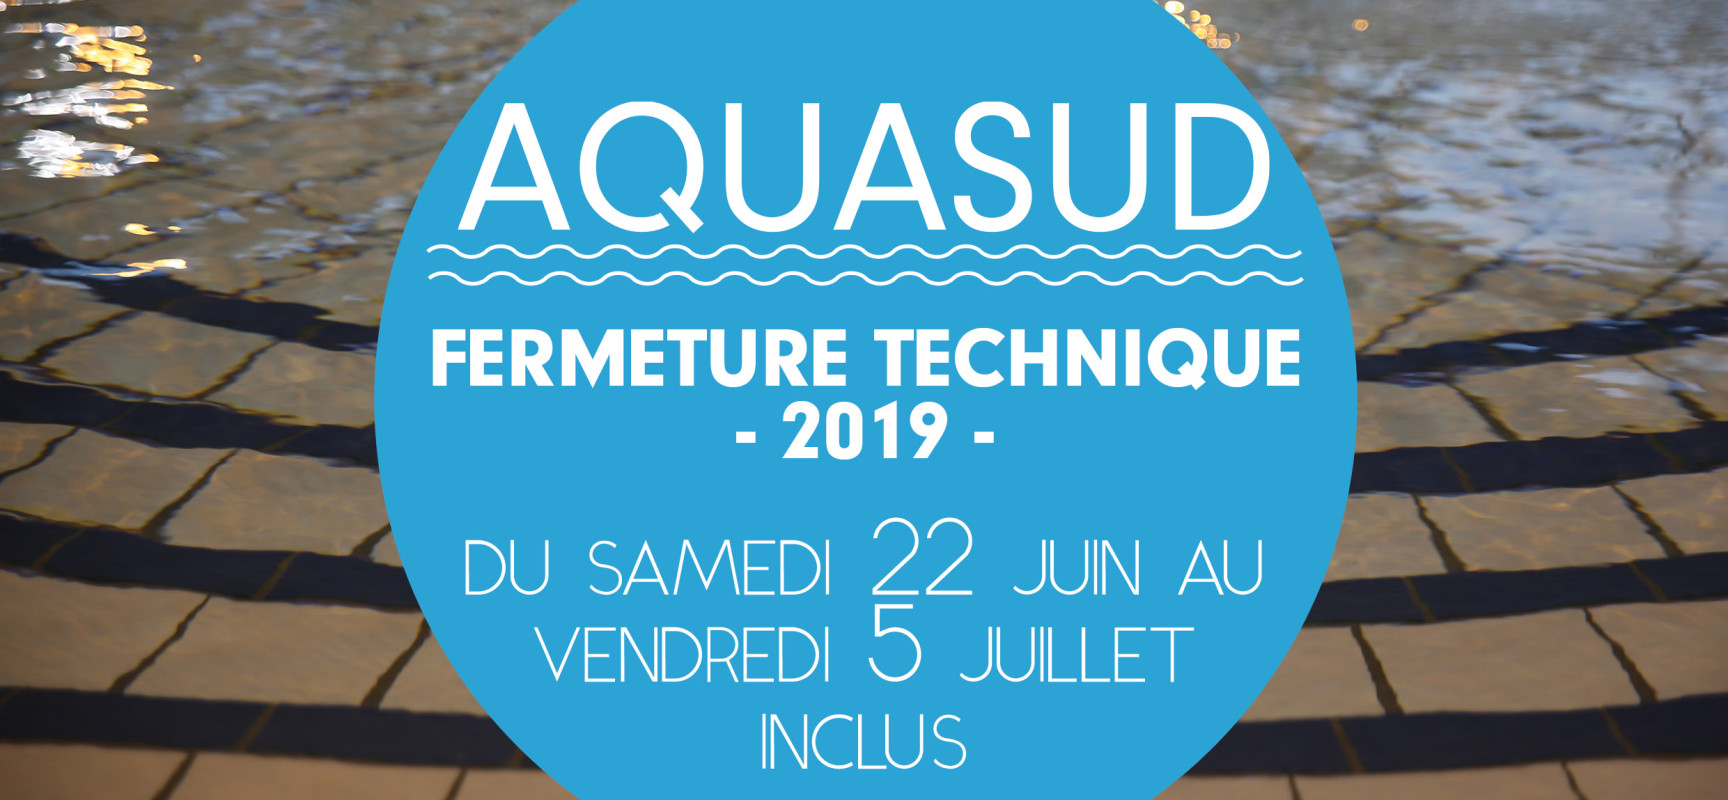 AQUASUD – Fermeture technique annuelle du samedi 22 juin au vendredi 5 juillet 2019 inclus